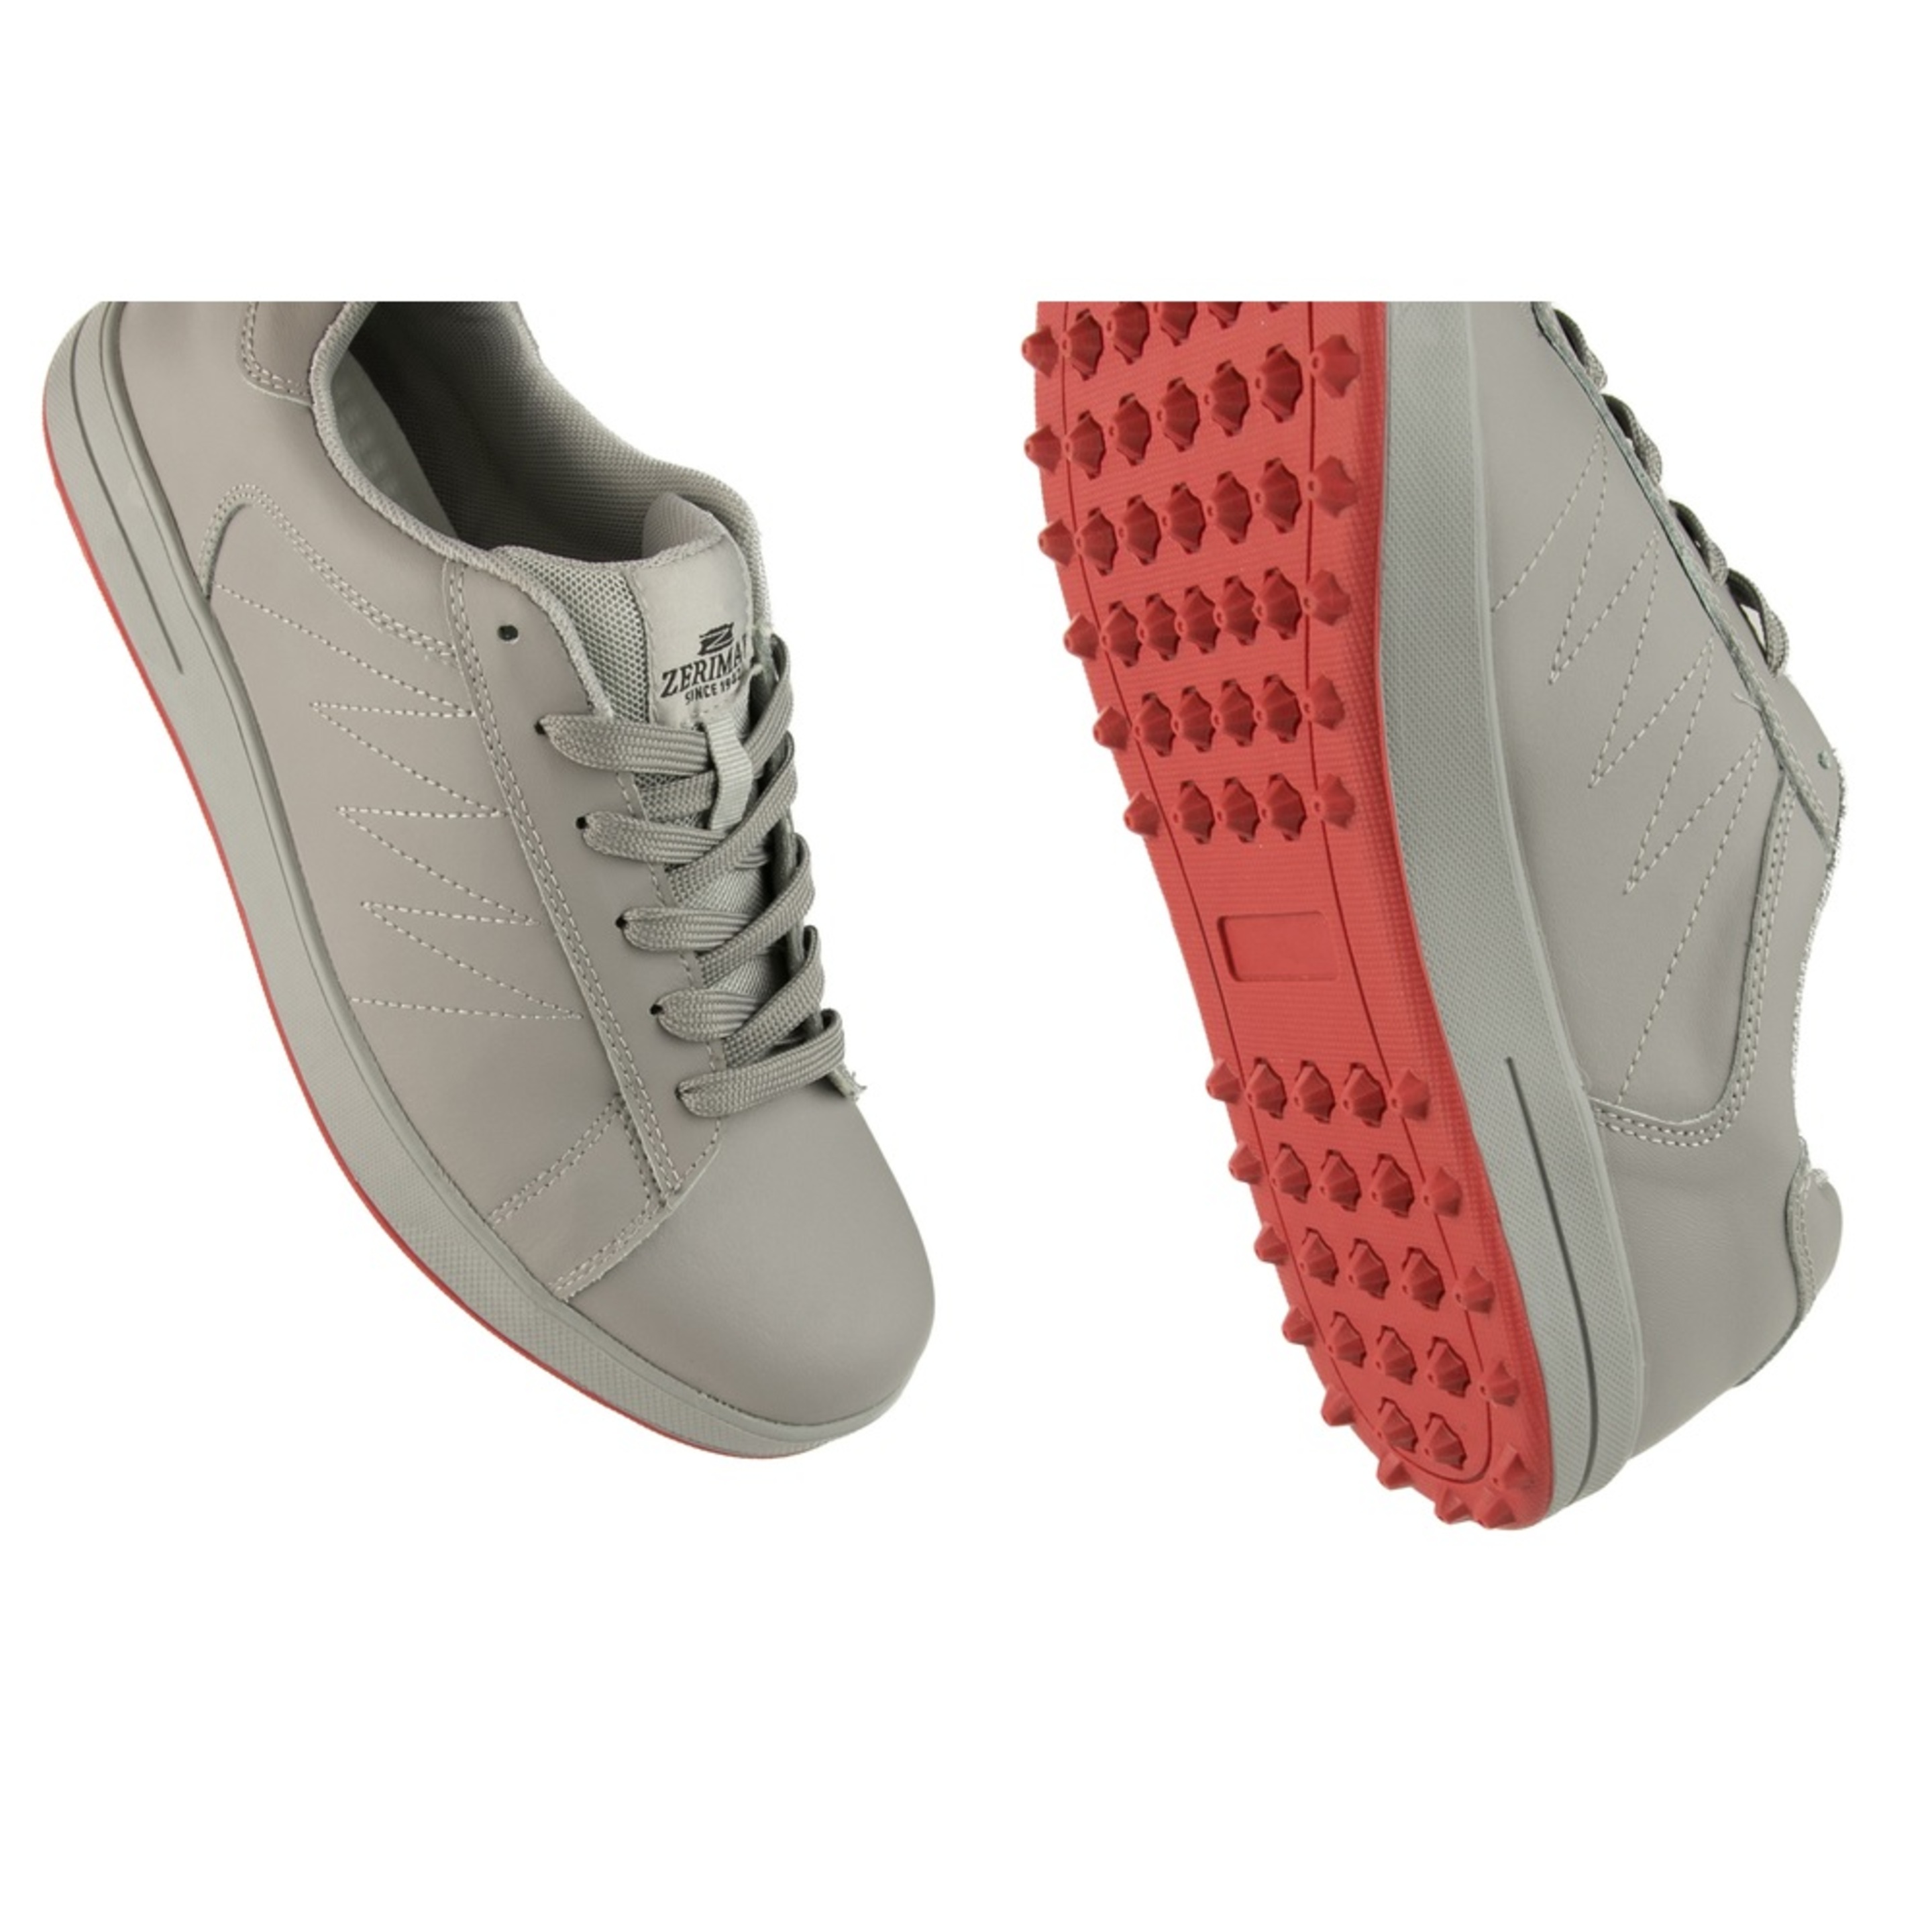 Zapatos De Golf Zerimar Gris Con Bordados - Gris - Zapatos Golf Hombre Zapatillas Piel  MKP